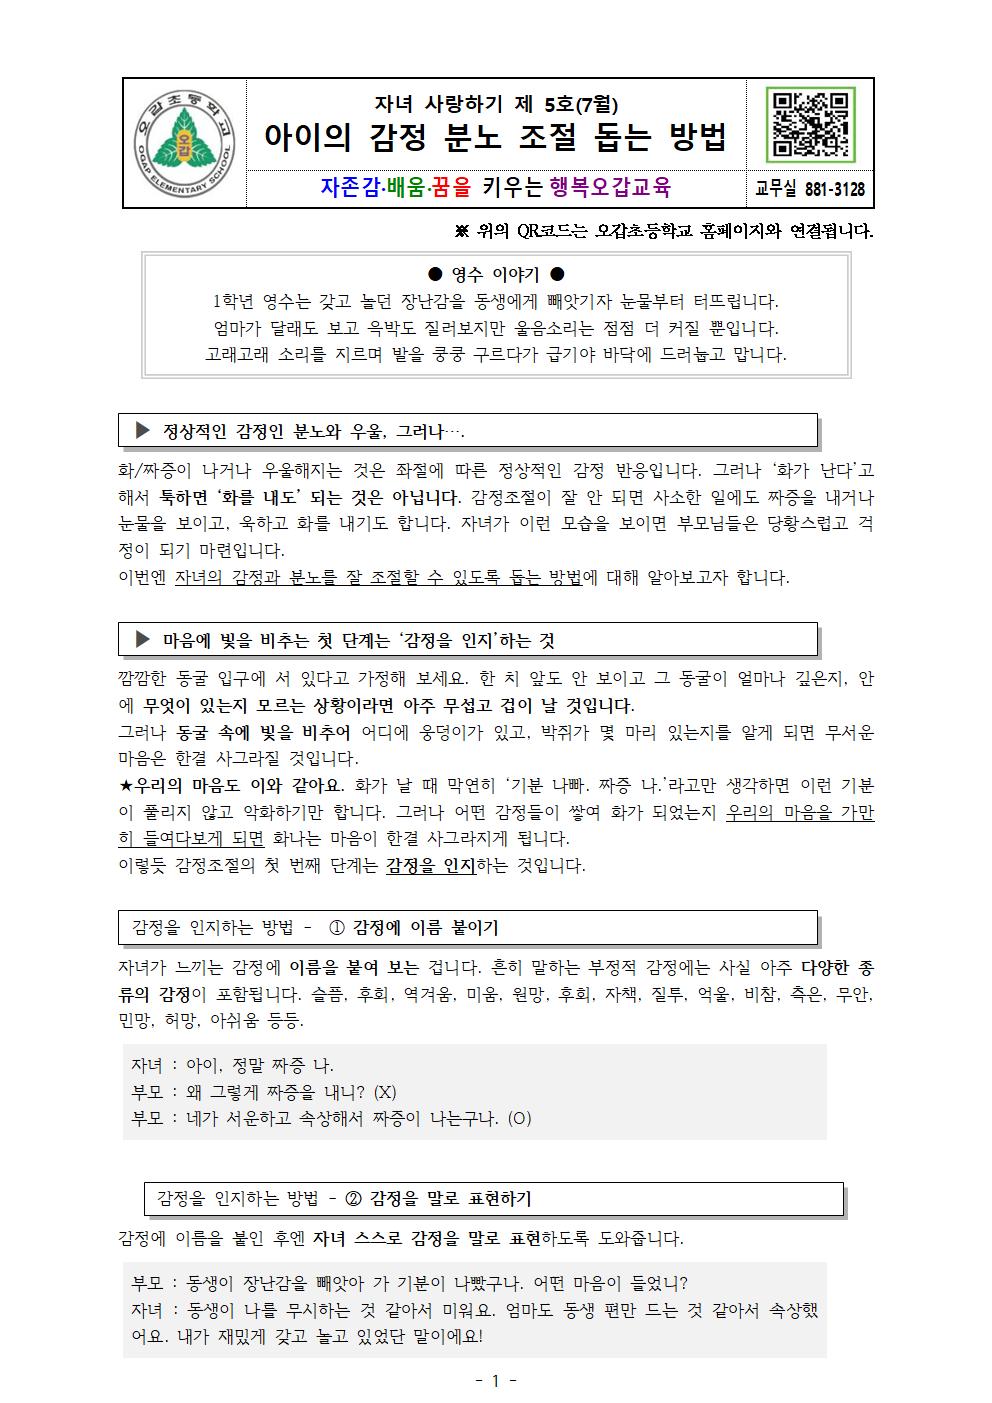 뉴스레터 5호(7월) 가정통신문001